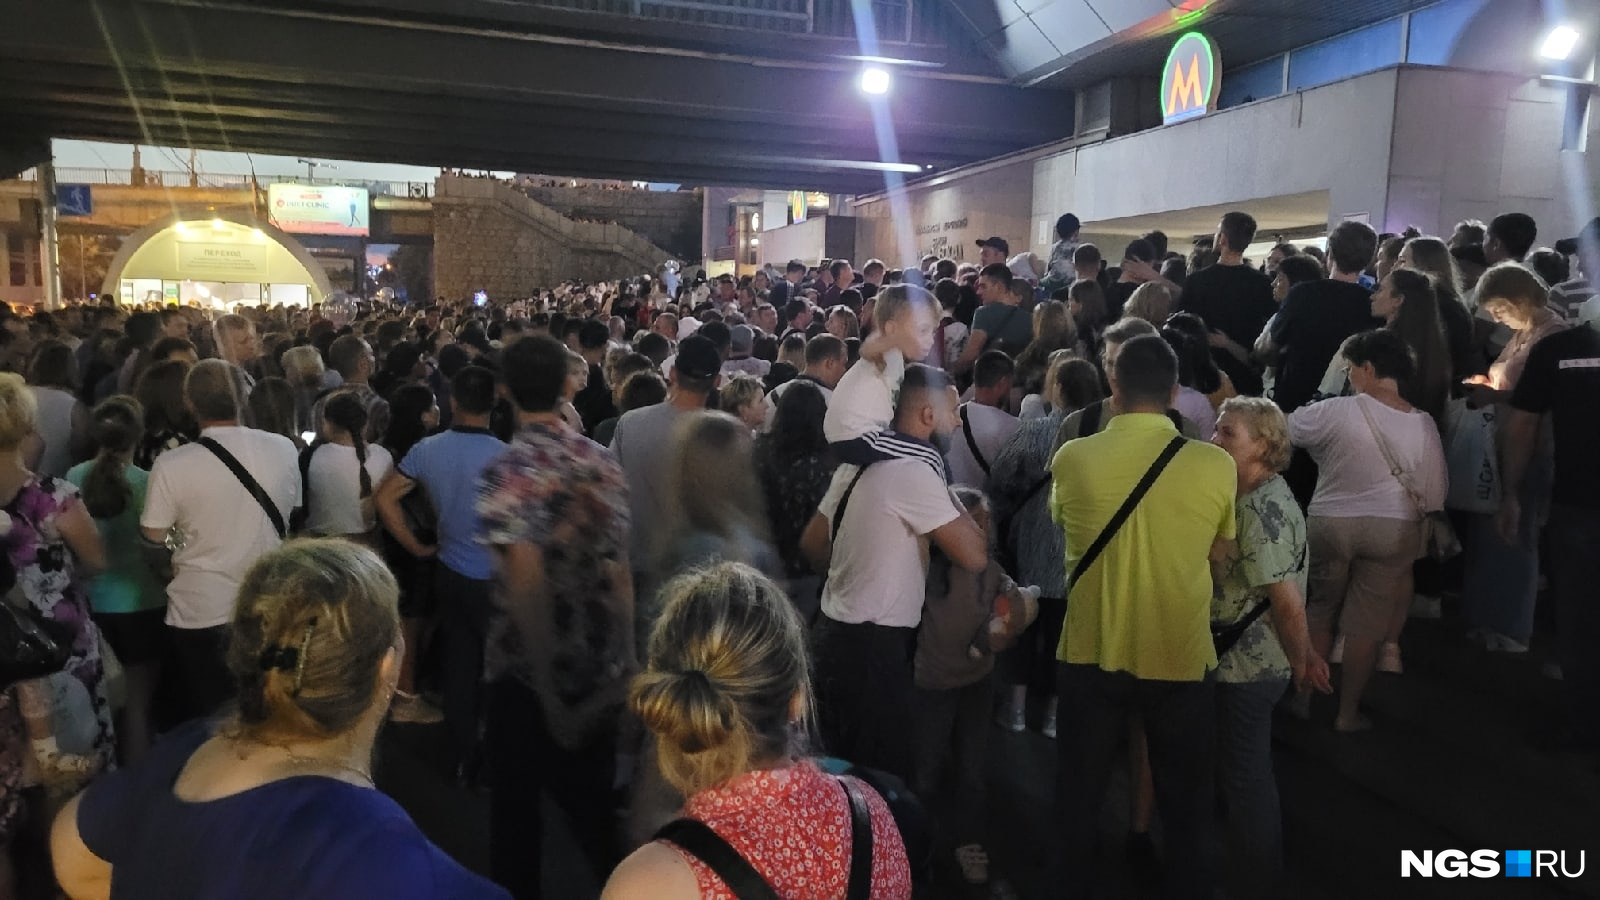 У метро дежурит полиция, народ запускают партиями